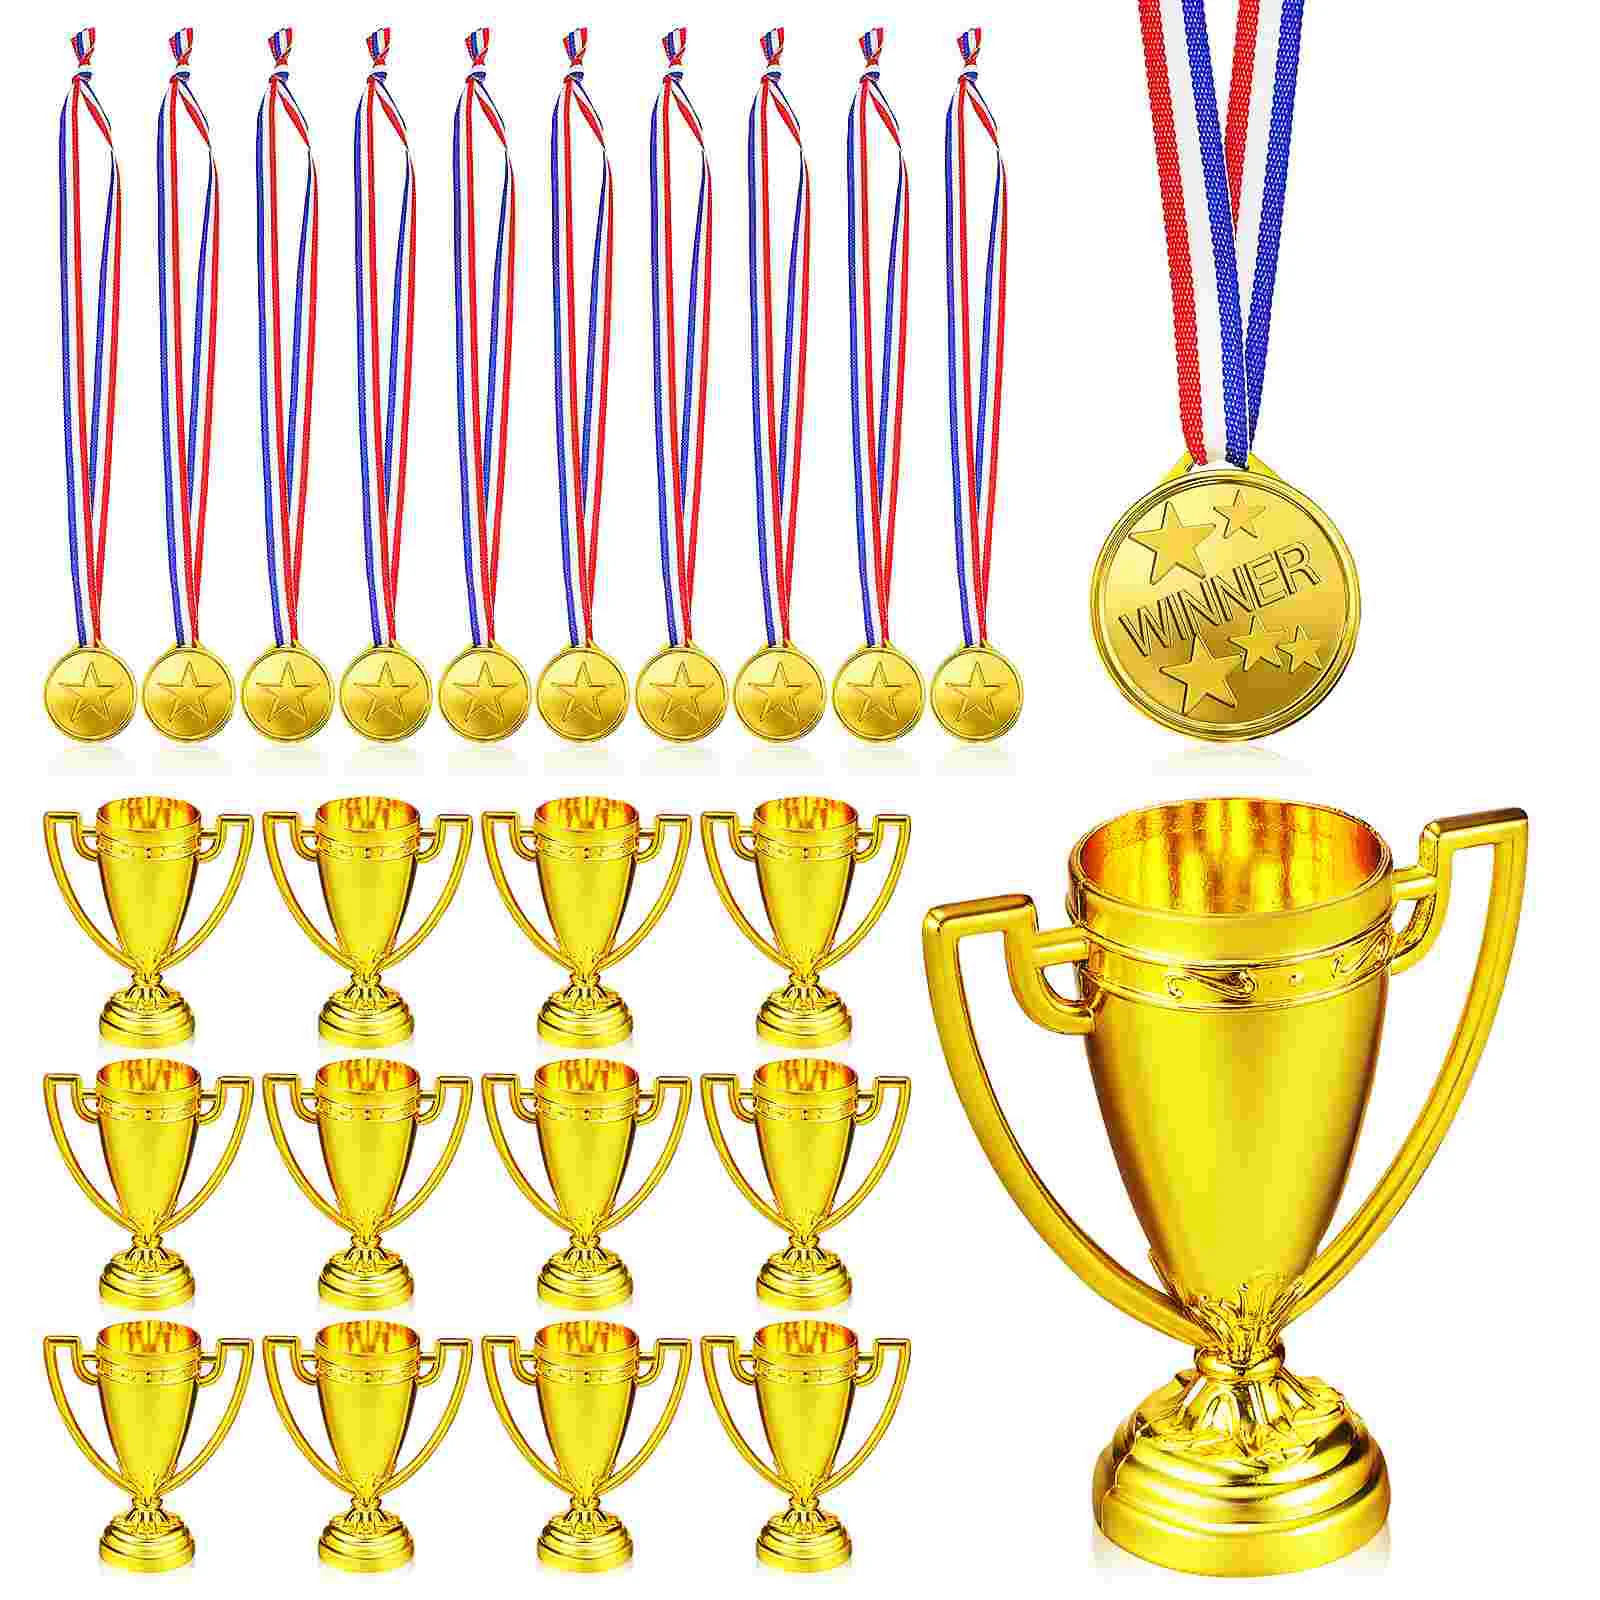 

18 шт. призовых наград и 18 шт. медалей для детей, награды на первое место, игрушки для спортивных вечеринок, турниров, игр